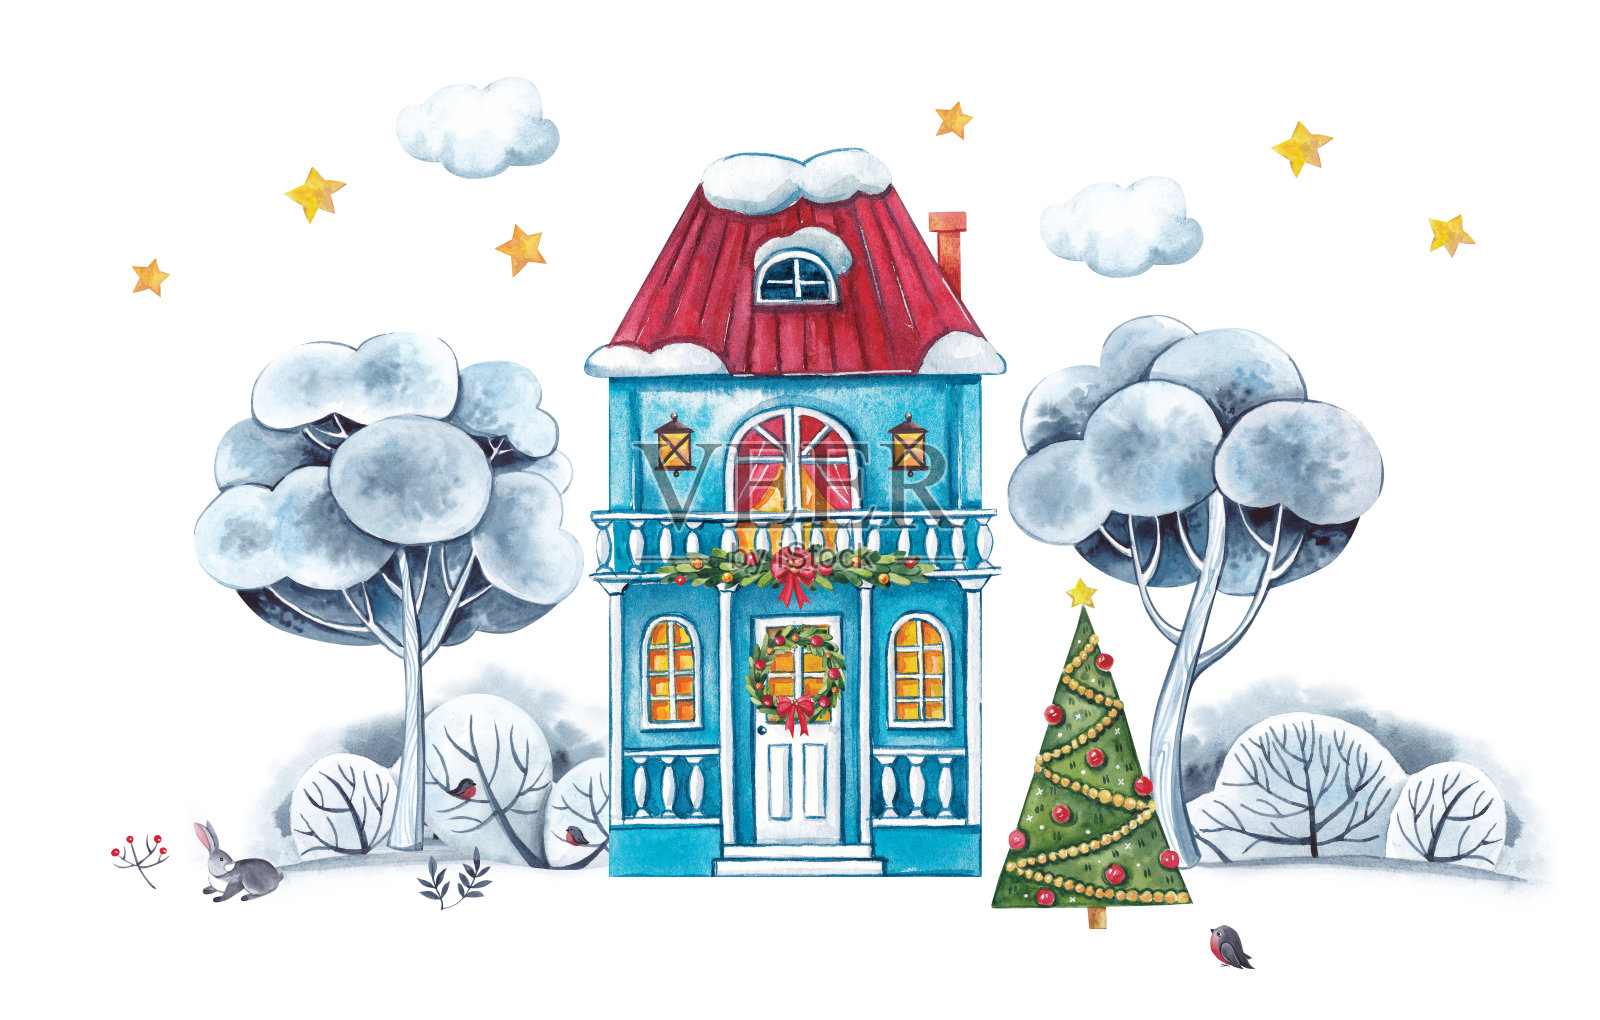 水彩插图。冬天的房子的蓝色装饰圣诞节。房子周围的树被雪覆盖着。设计元素图片